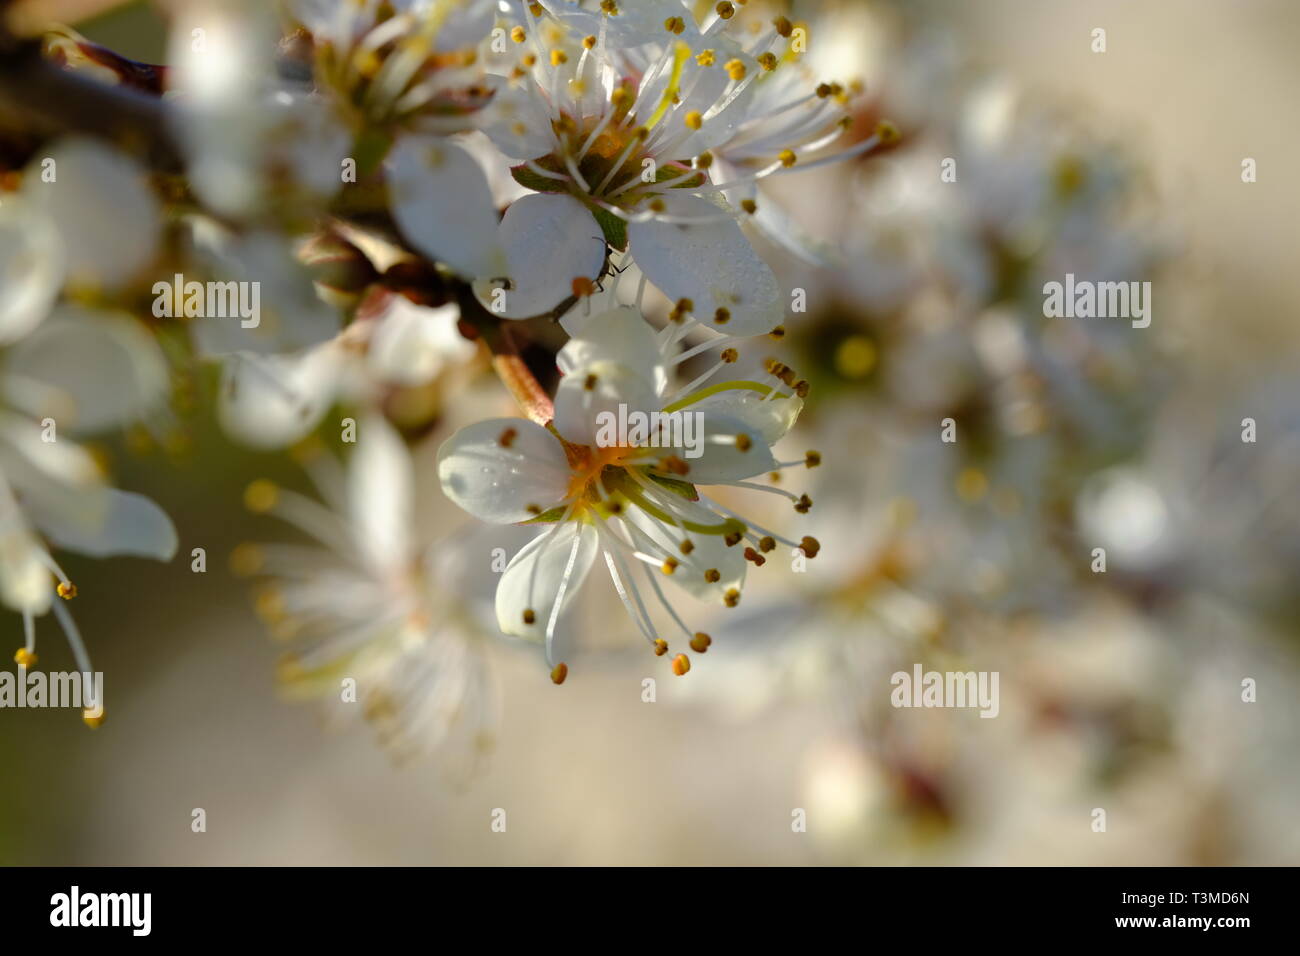 Cheshire, England, Blackthorn Blossom, Sloe Gin, Sloe, Hedging Plant, Prunus Spinosa, Laub, Heckenreihen, Frühling, Sträucher, Bäume, Natürlich, Weiß. Stockfoto